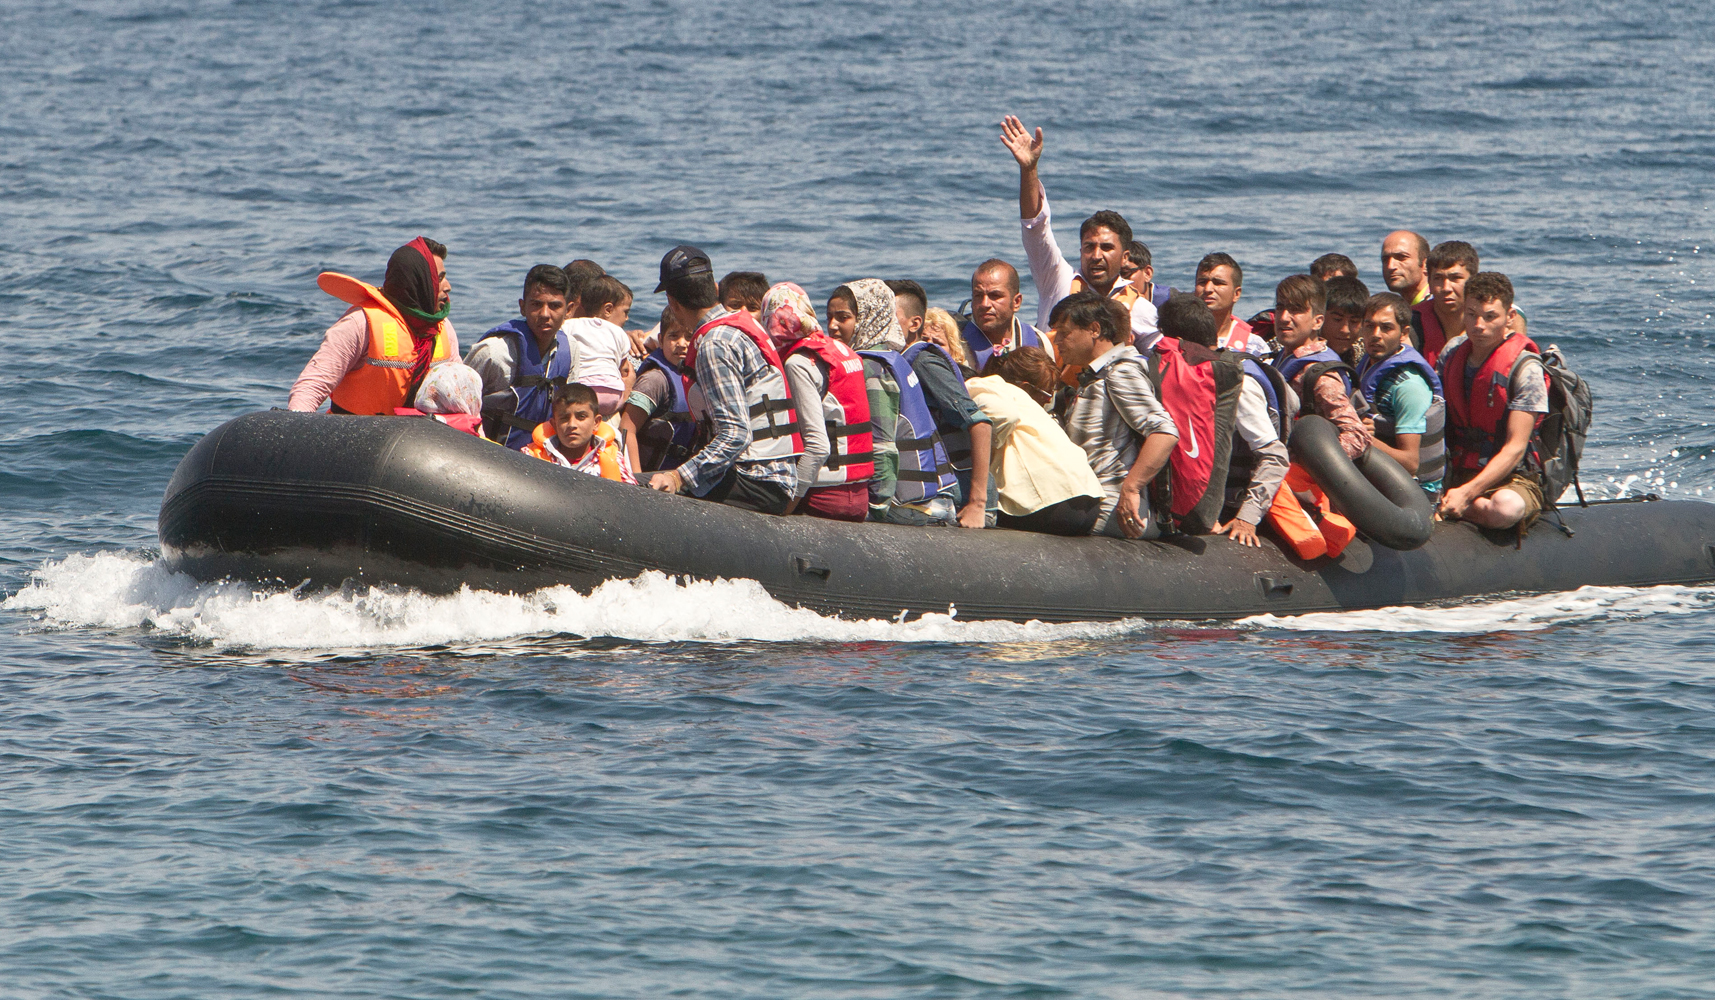 Βάρκα γεμάτη αλλοδαπούς παράνομους μετανάστους με σβηστά φώτα έπεσε πάνω σε σκάφος του Λιμενικού Σώματος (upd)